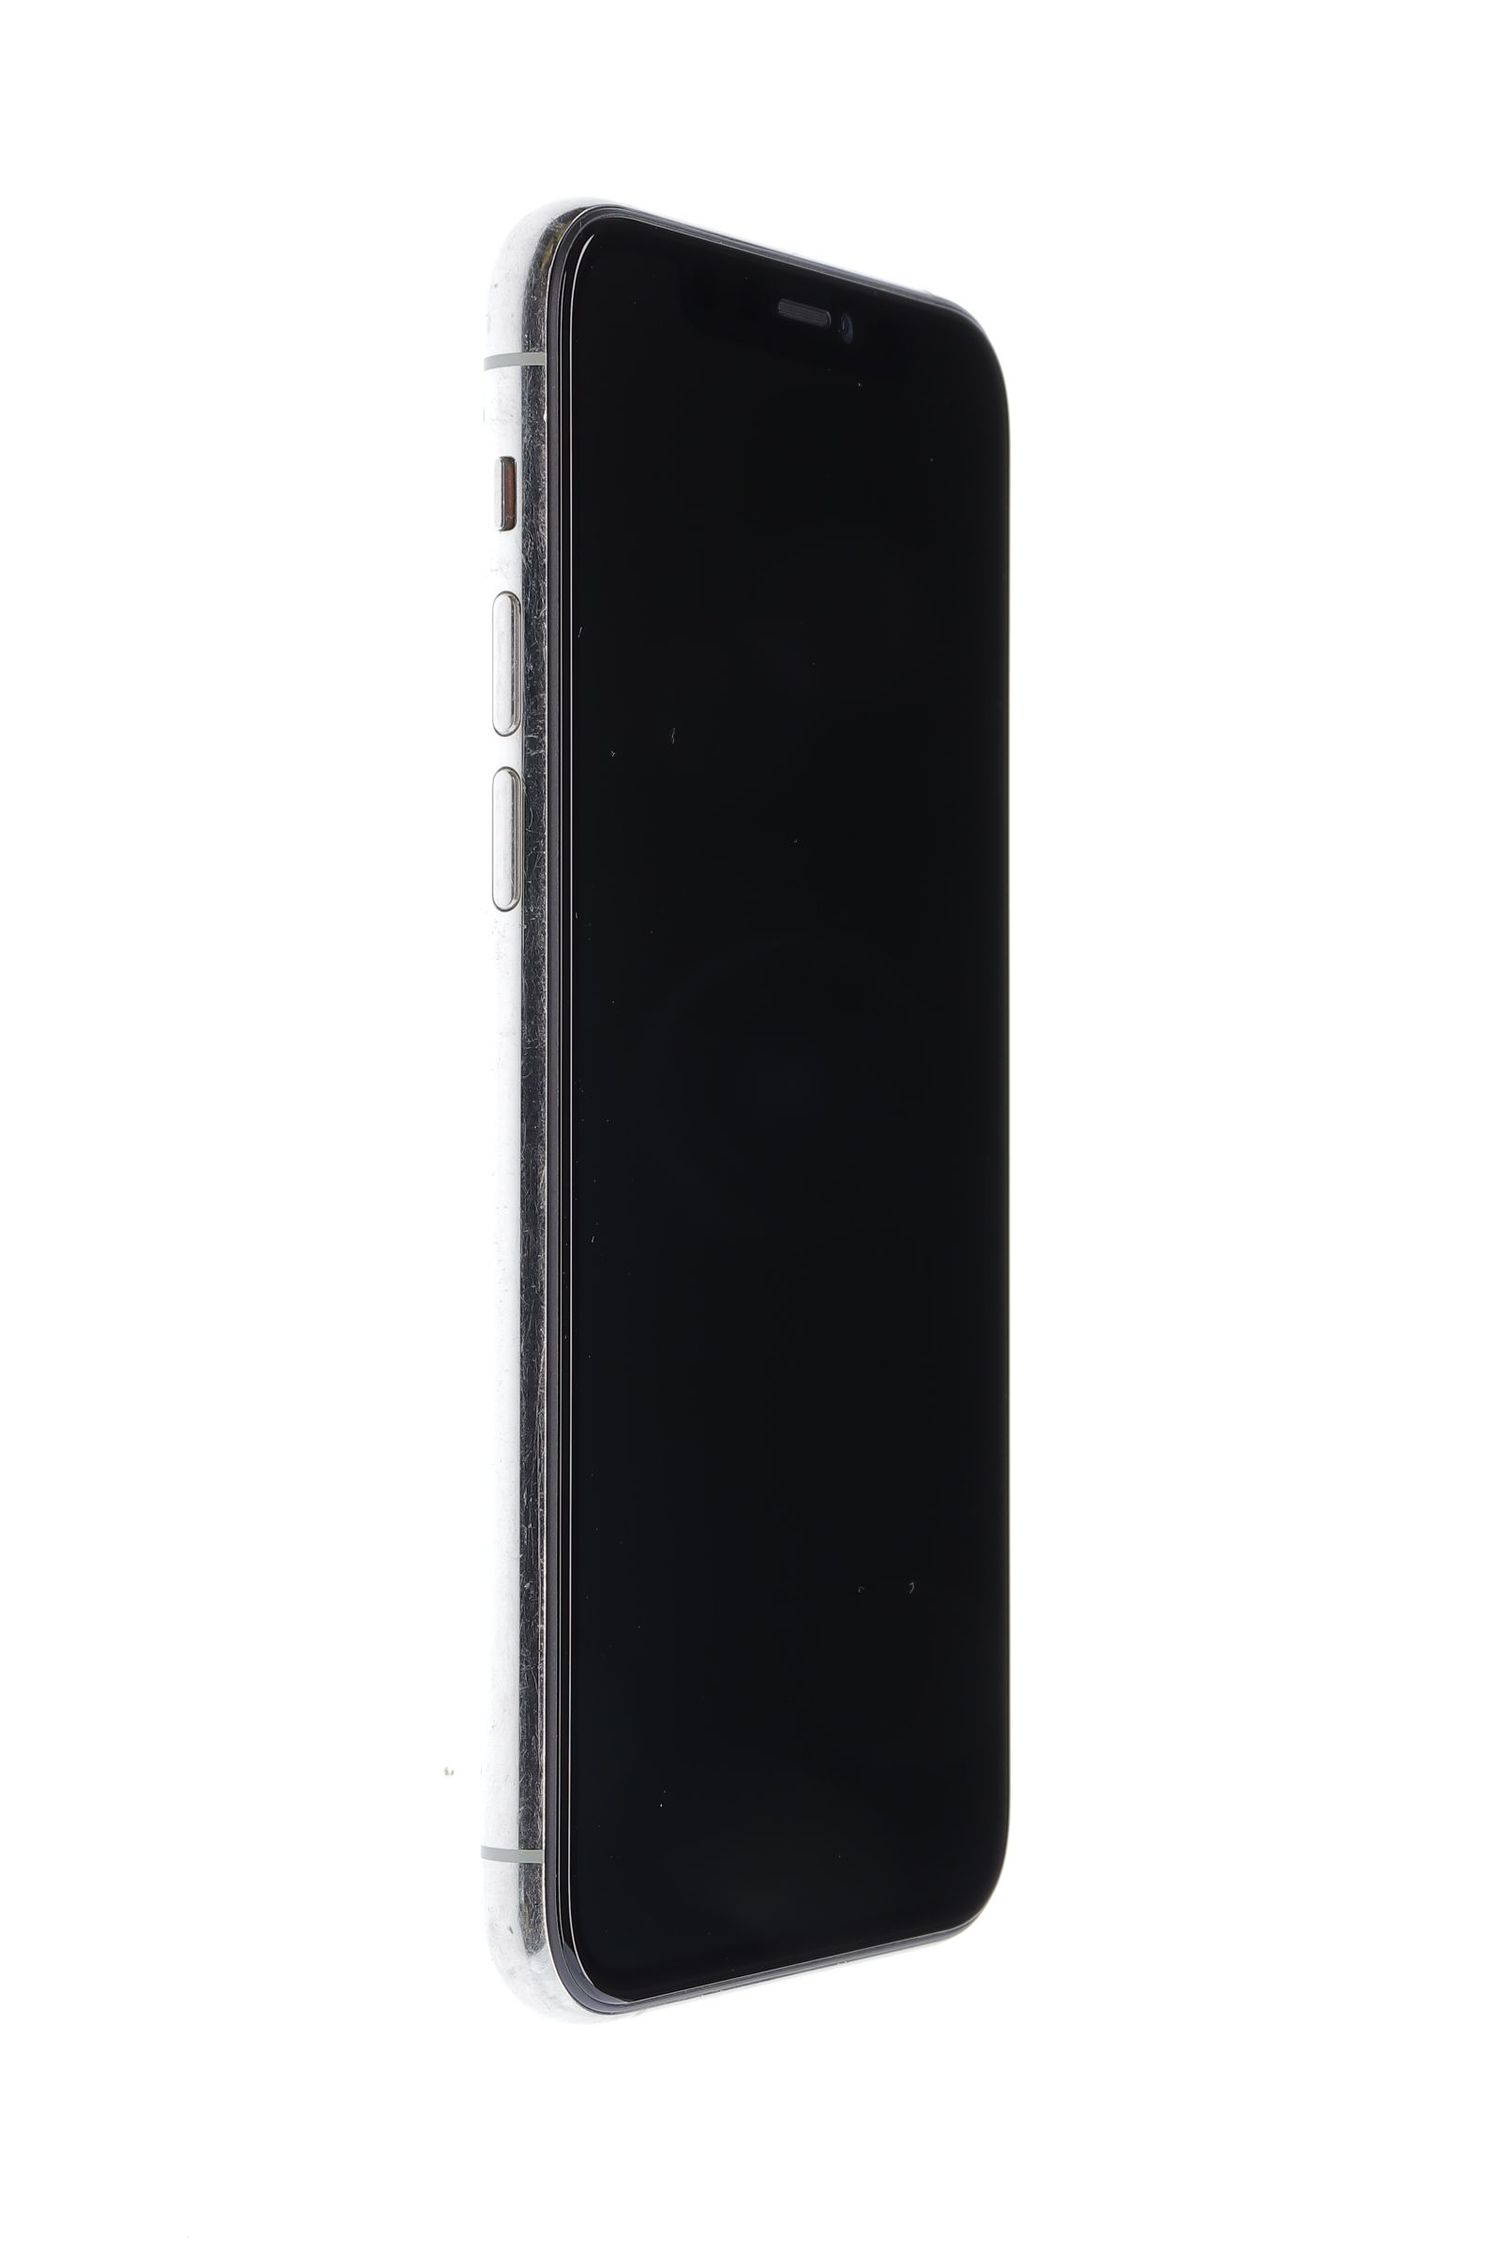 Telefon mobil Apple iPhone 11 Pro, Silver, 256 GB, Foarte Bun